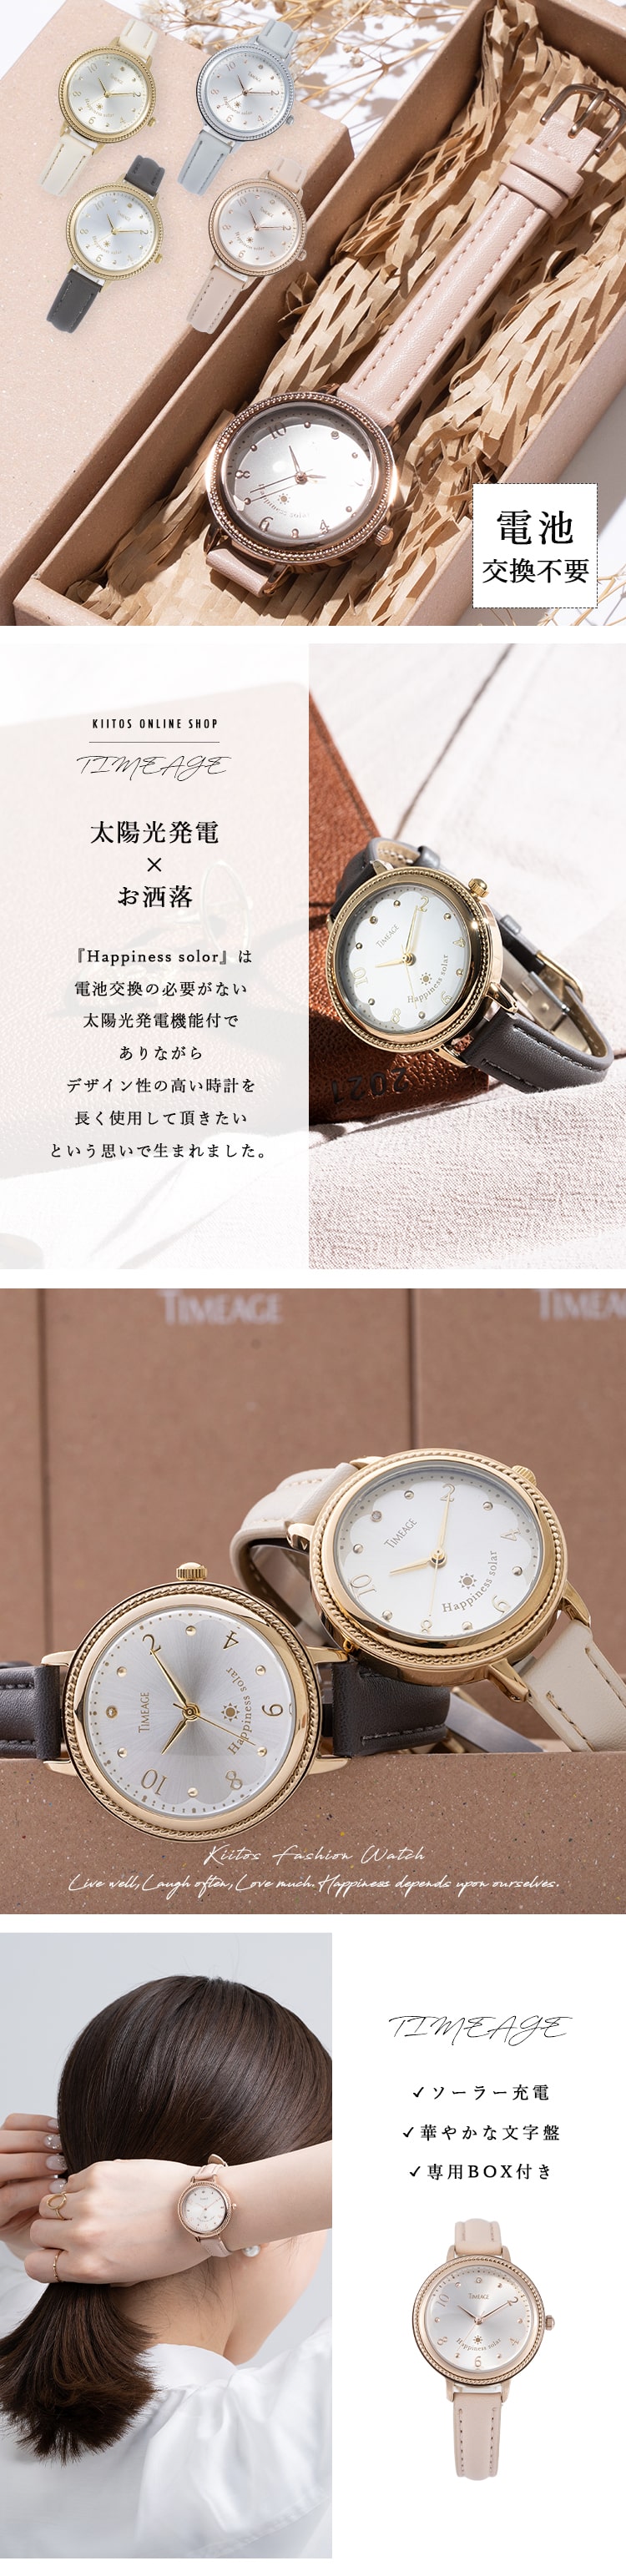 腕時計 レディース 日本製 ソーラー 電池交換不要 TIMEAGE シェル 